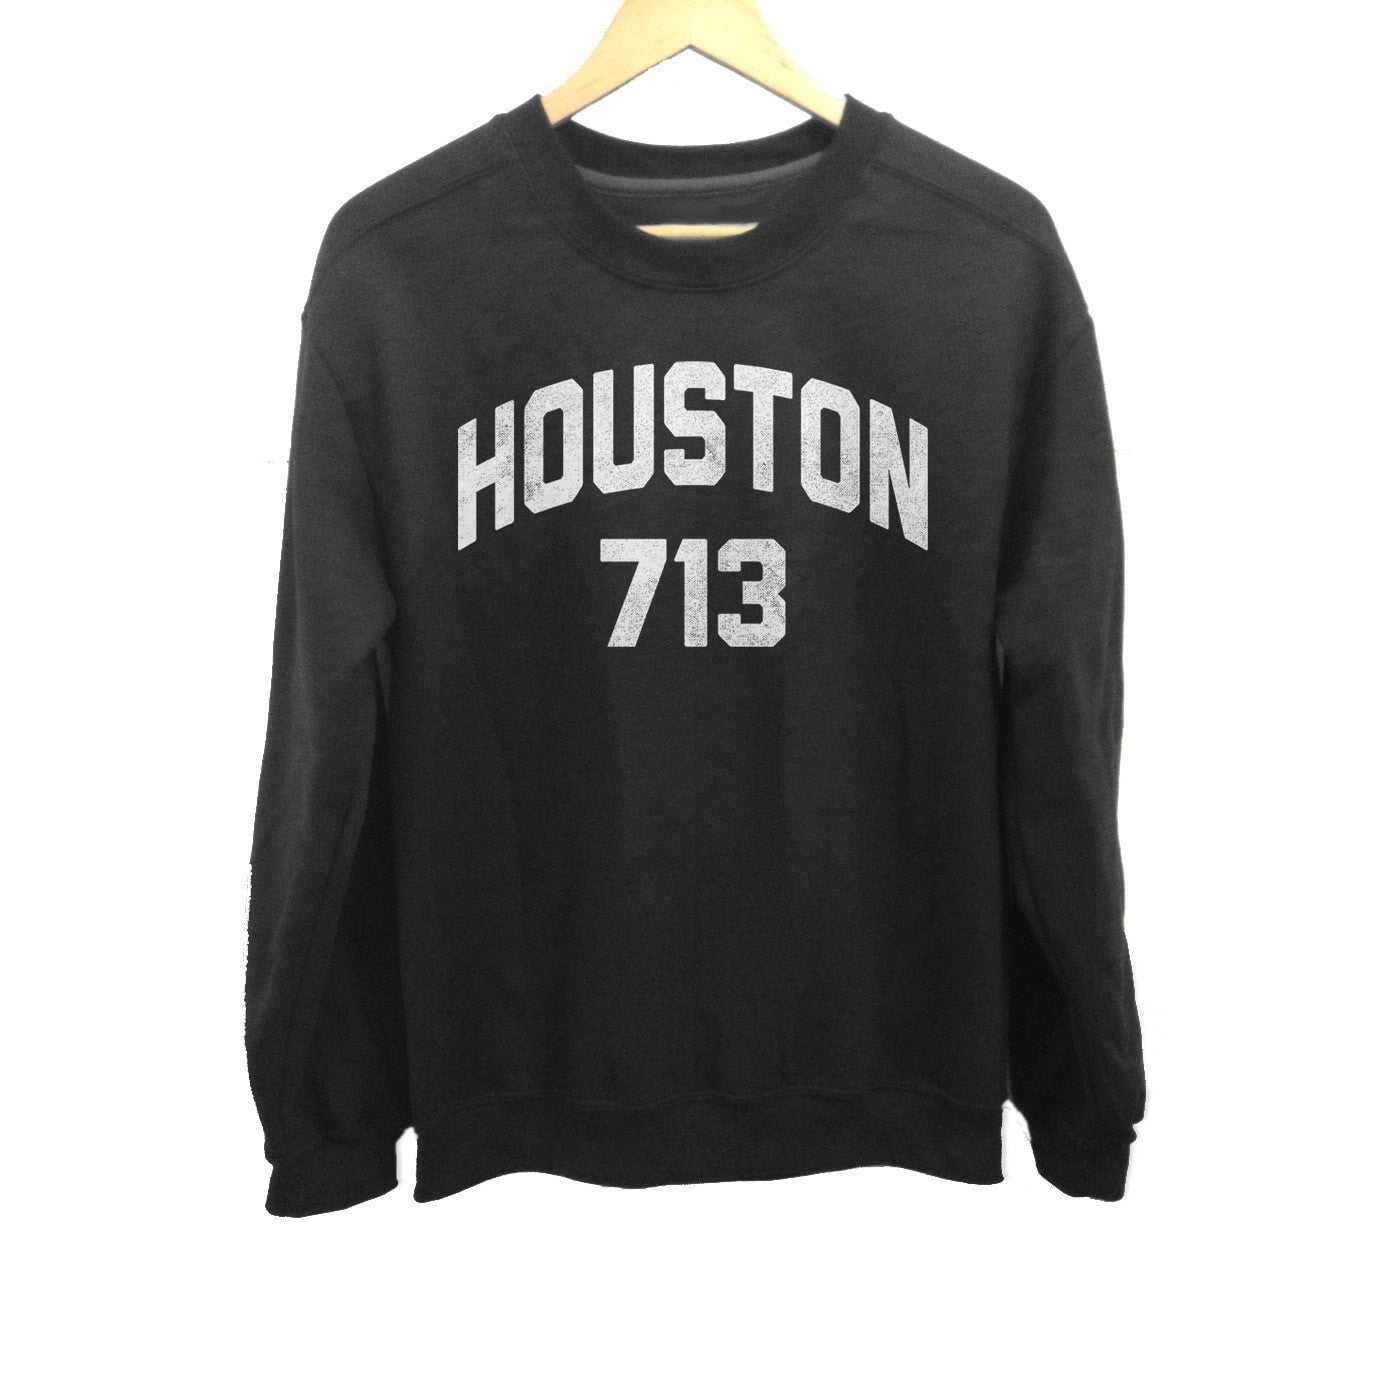 Unisex Houston 713 Area Code Sweatshirt